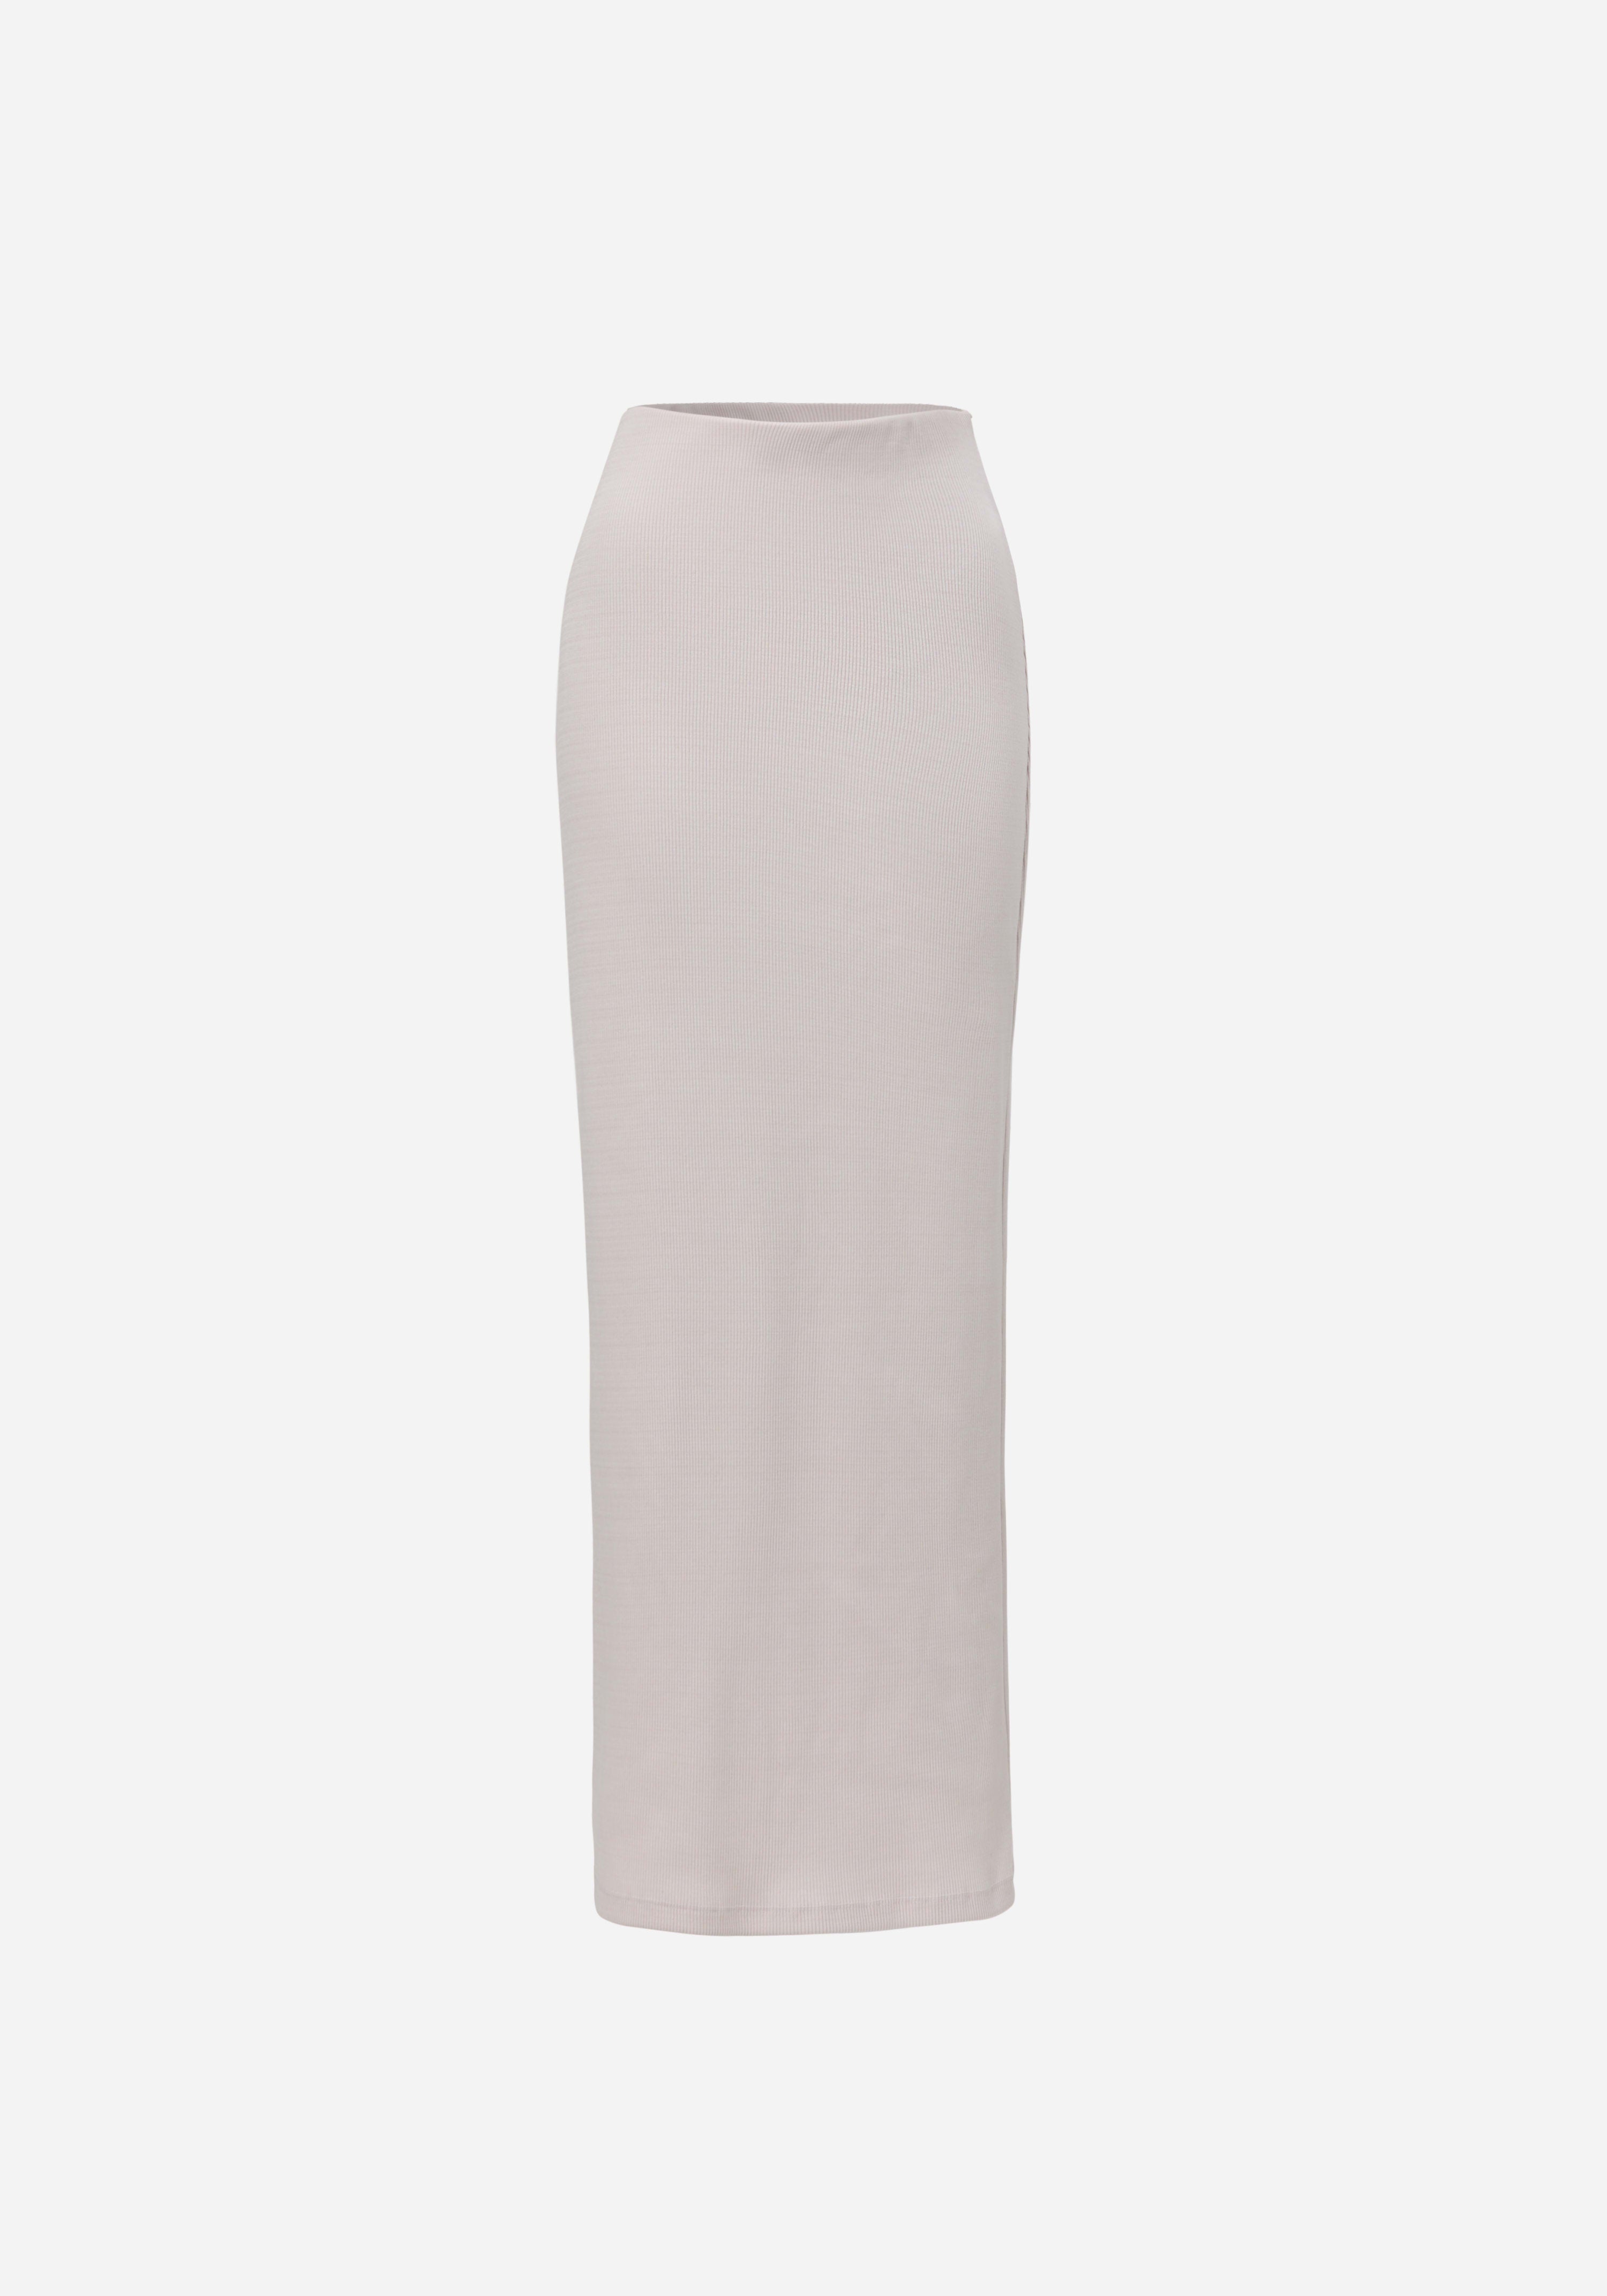 Radiance Skirt - Pre Order IN GREY, WHITE | SKIRTS | VIKTORIA & WOODS ...